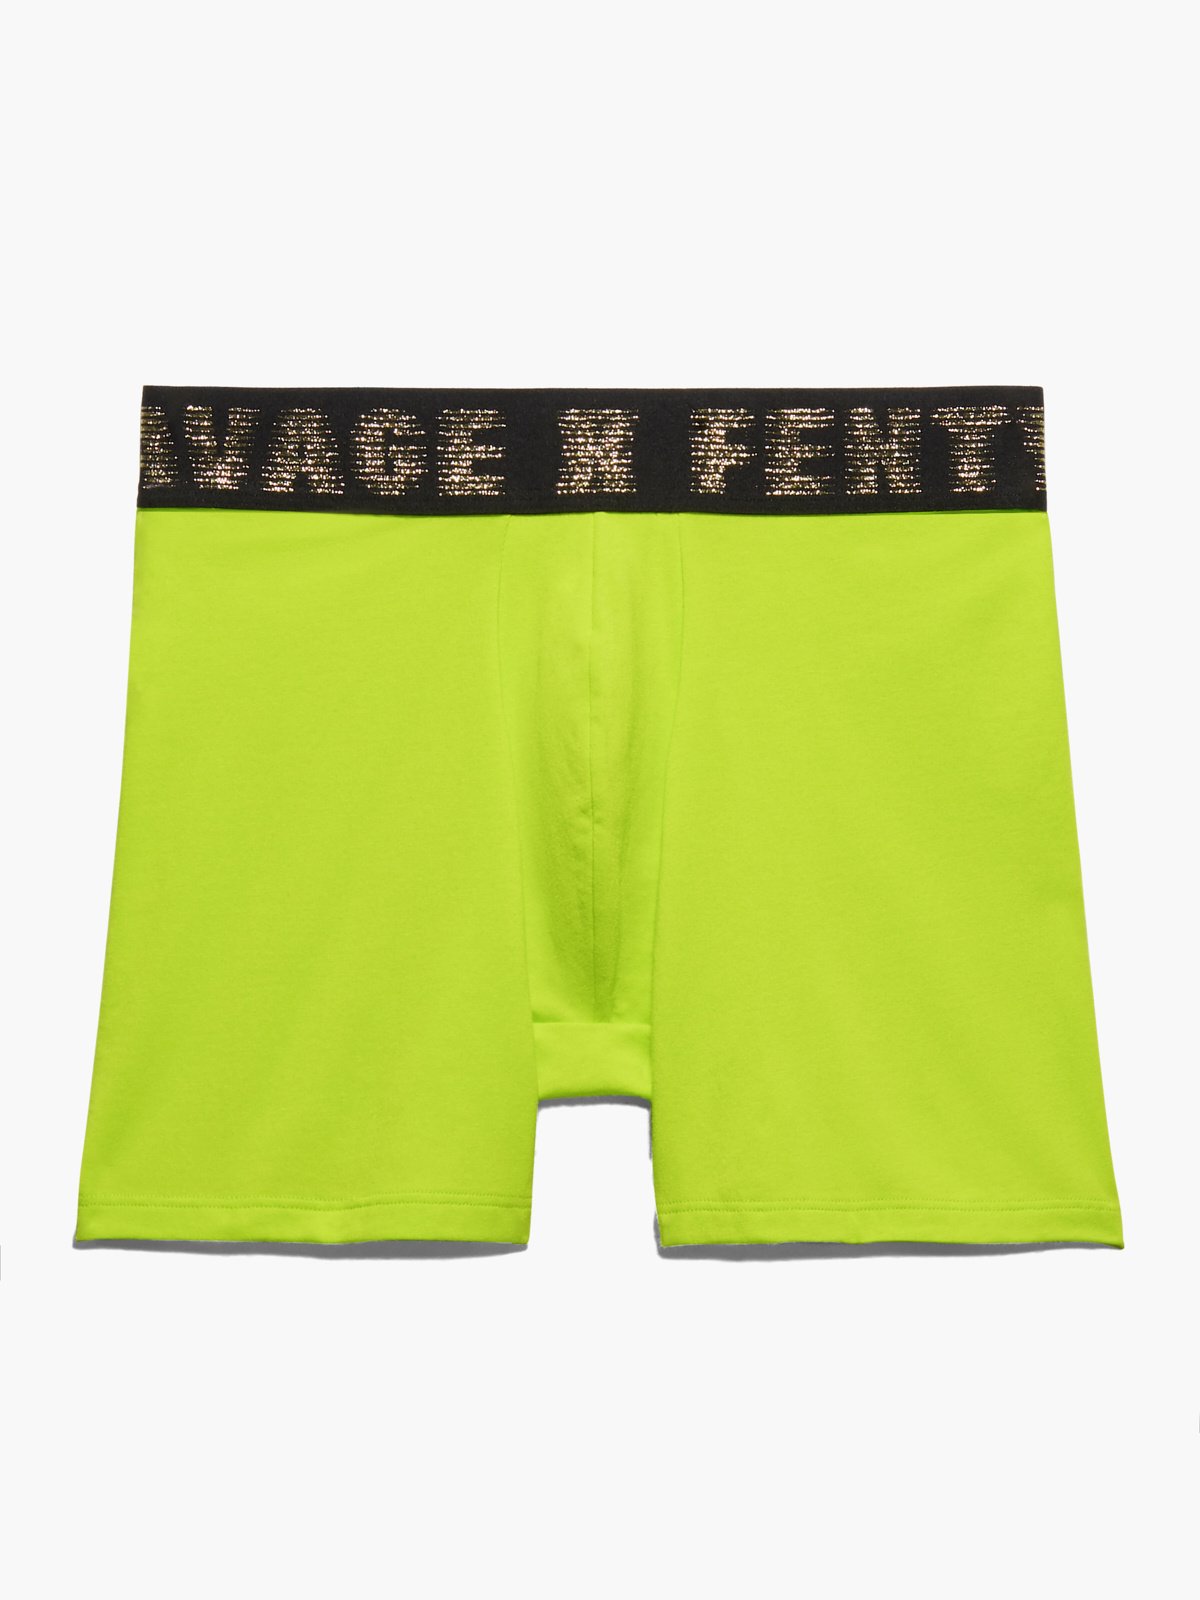 Savage X Boxer Briefs in Green | SAVAGE X FENTY